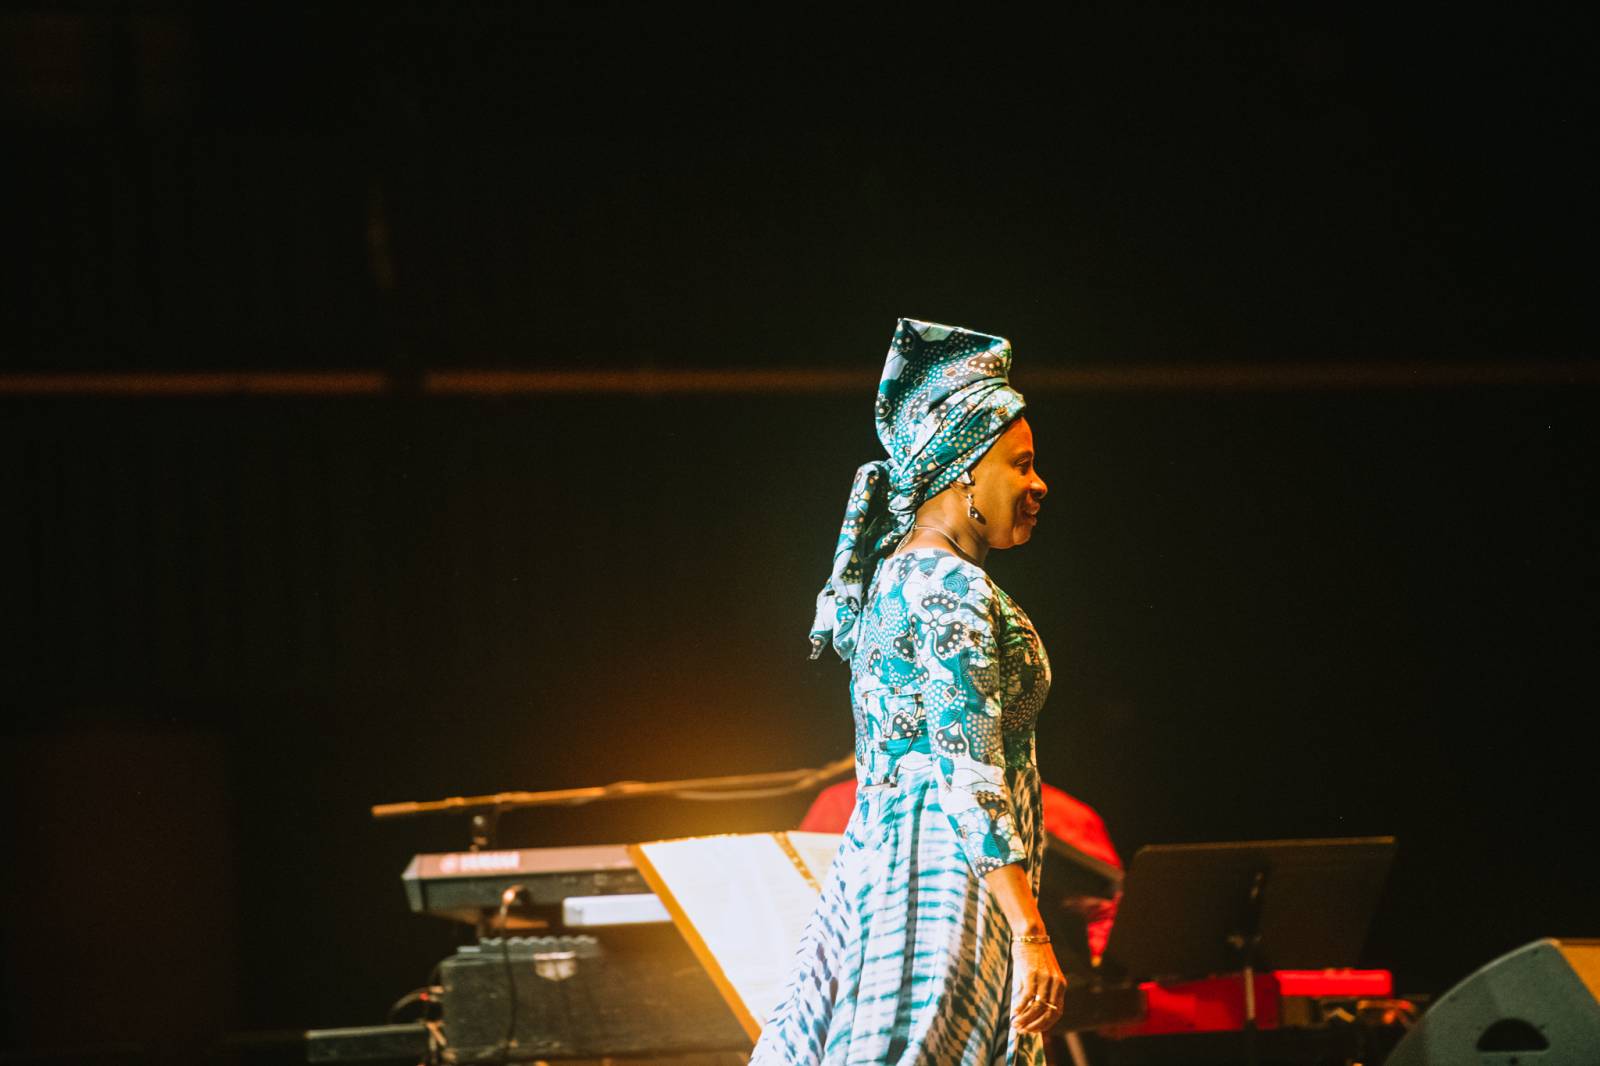 Angélique Kidjo ohromila svým hlasem Forum Karlín, přednesla mu svou verzi kultovního alba Talking Heads